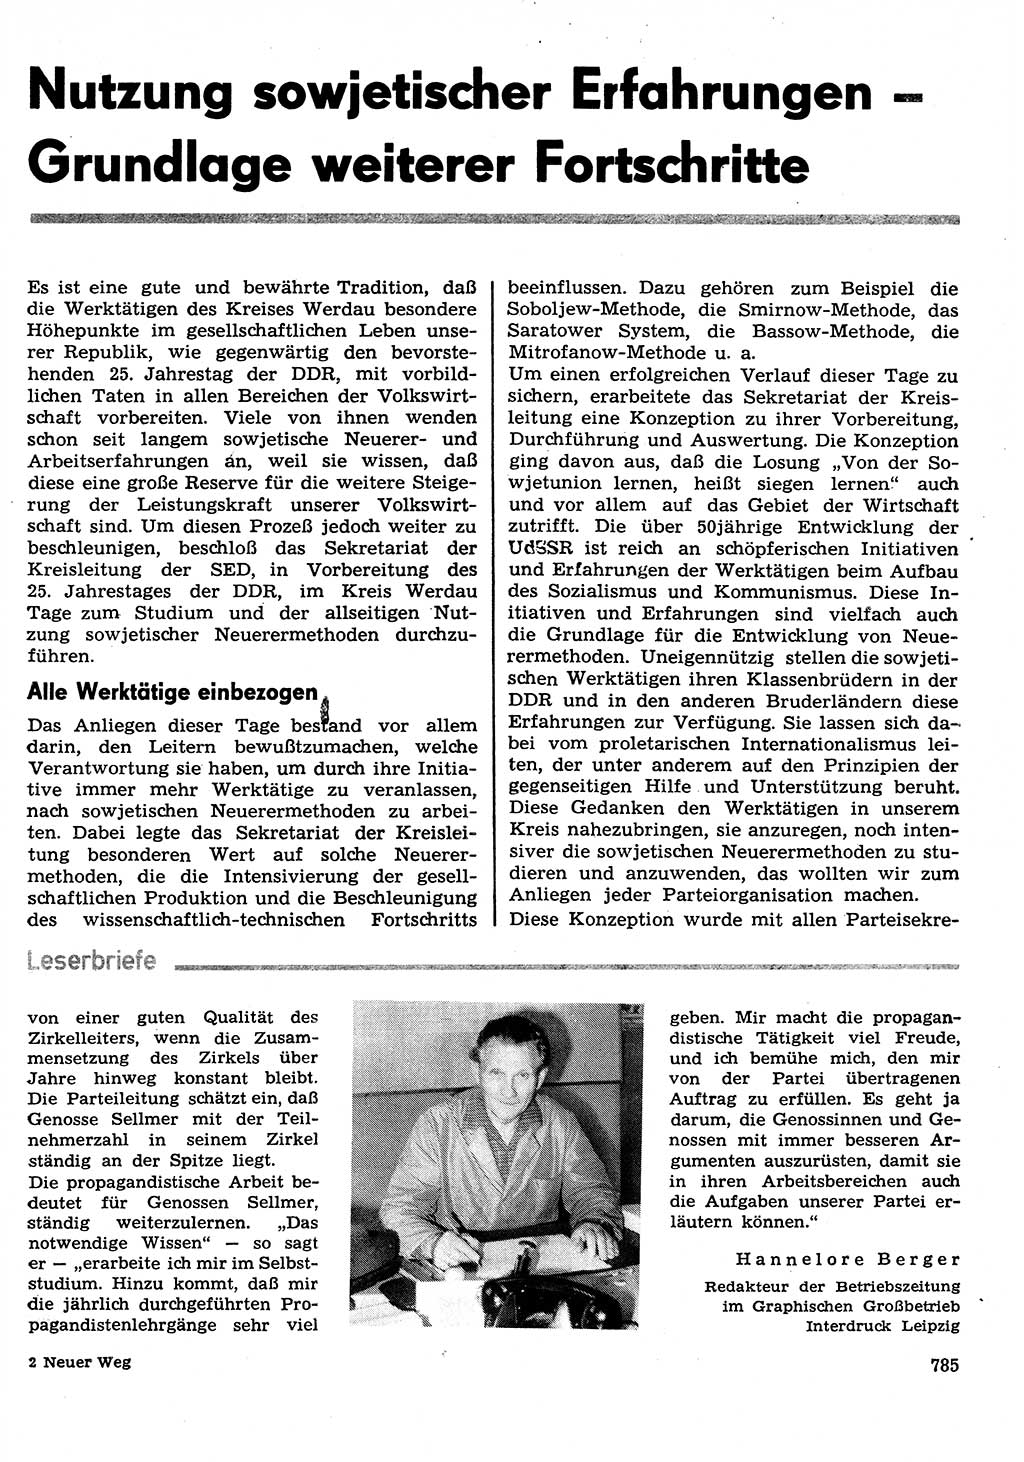 Neuer Weg (NW), Organ des Zentralkomitees (ZK) der SED (Sozialistische Einheitspartei Deutschlands) für Fragen des Parteilebens, 29. Jahrgang [Deutsche Demokratische Republik (DDR)] 1974, Seite 785 (NW ZK SED DDR 1974, S. 785)